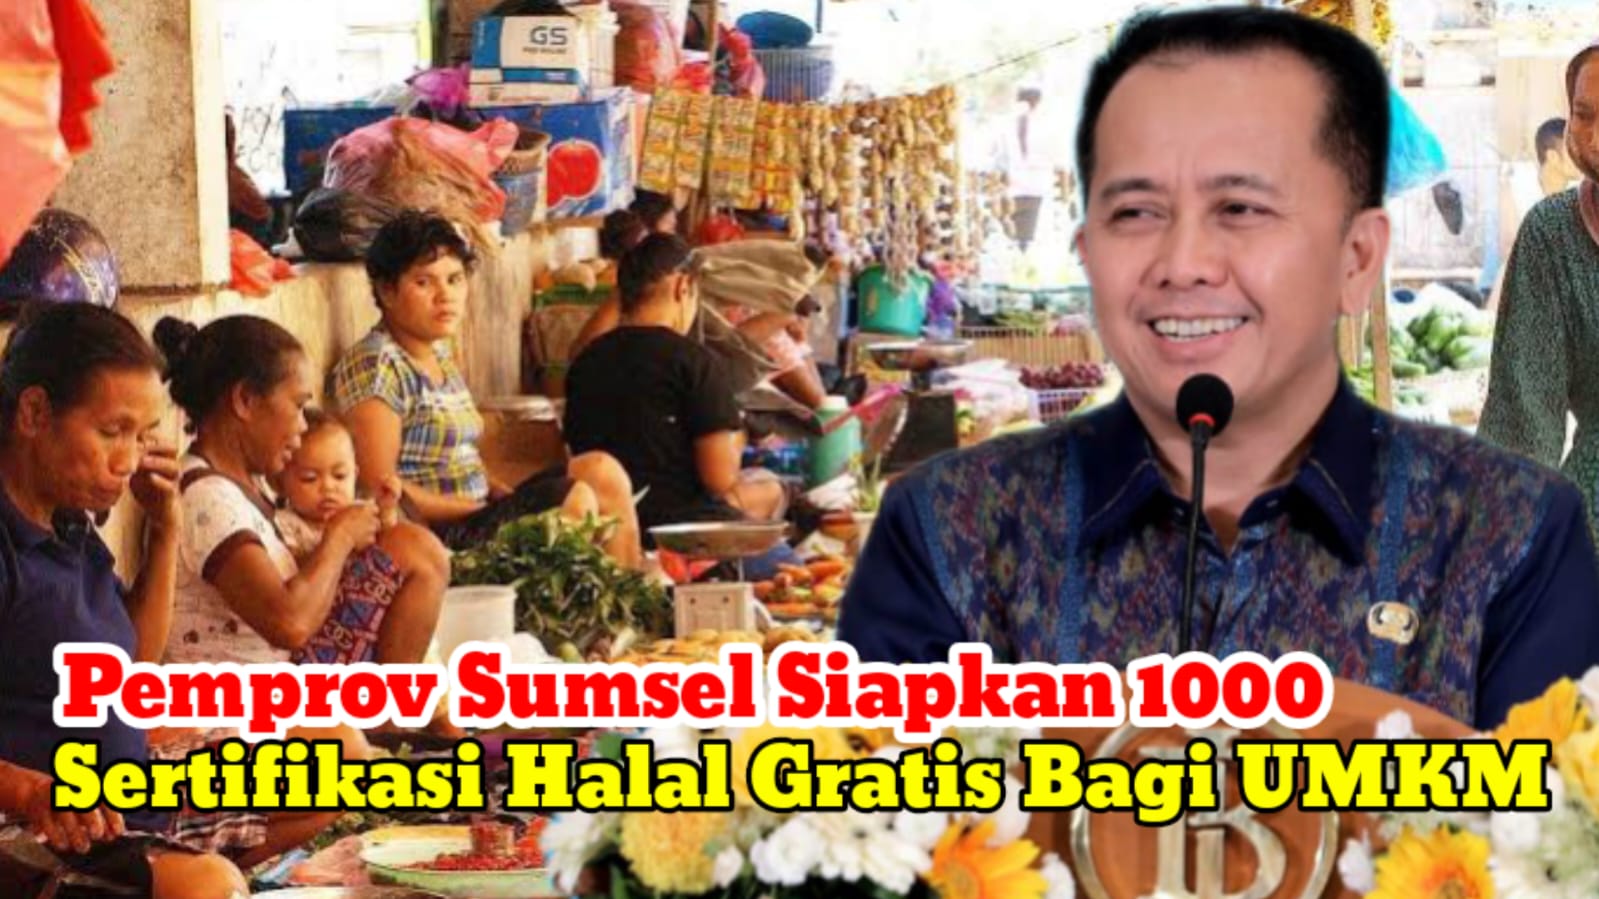 Pemprov Sumsel Siapkan 1000 Sertifikasi Halal Gratis Bagi UMKM